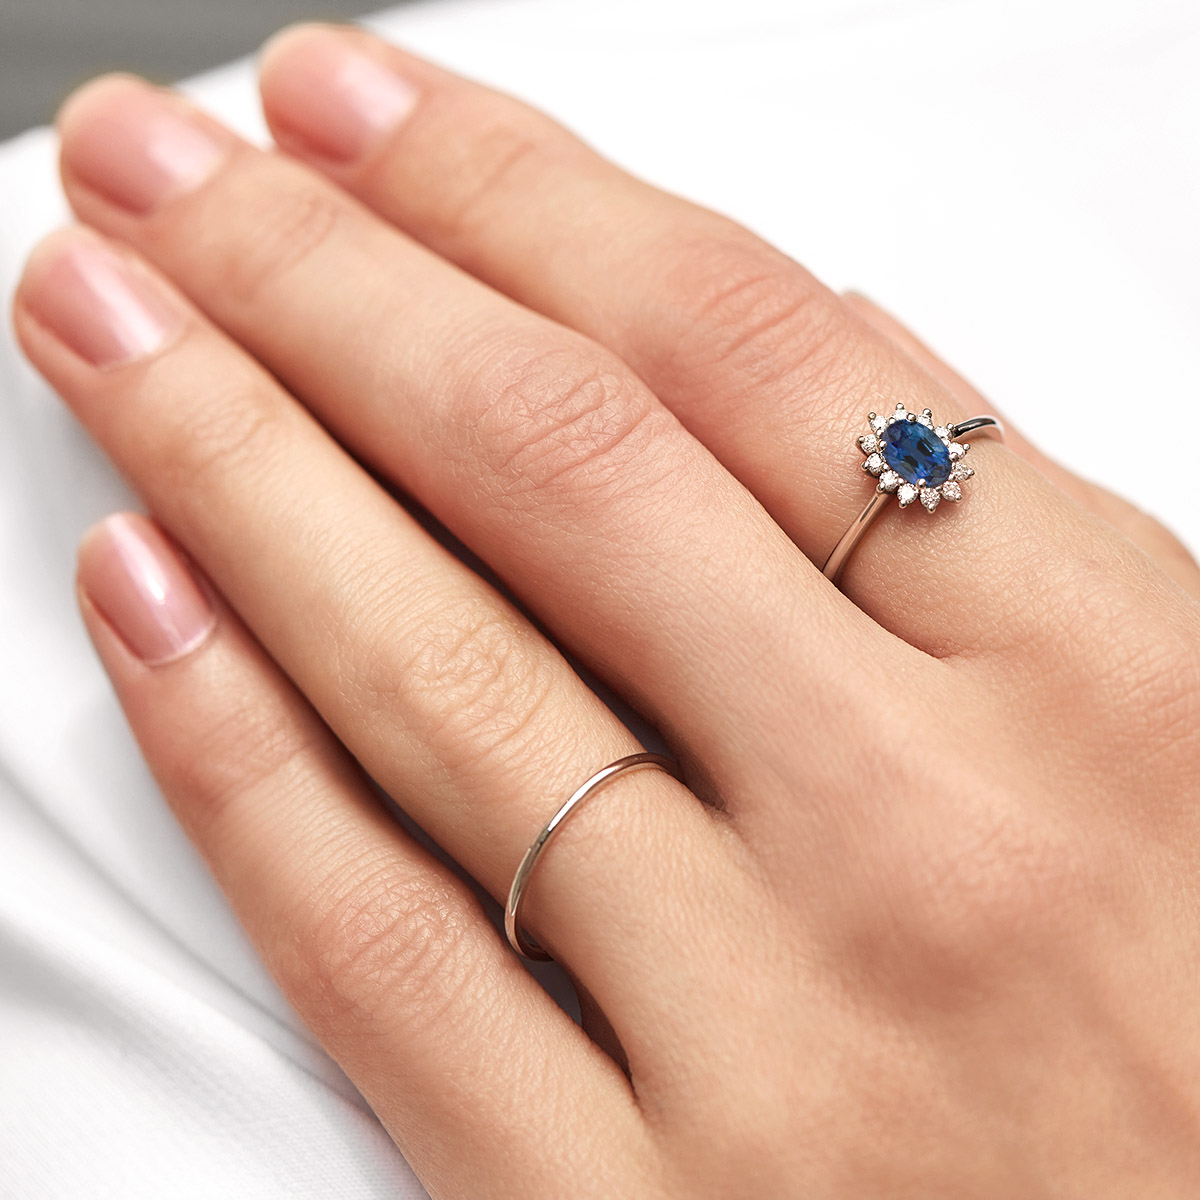 Batu permata biru terindah dalam perhiasan